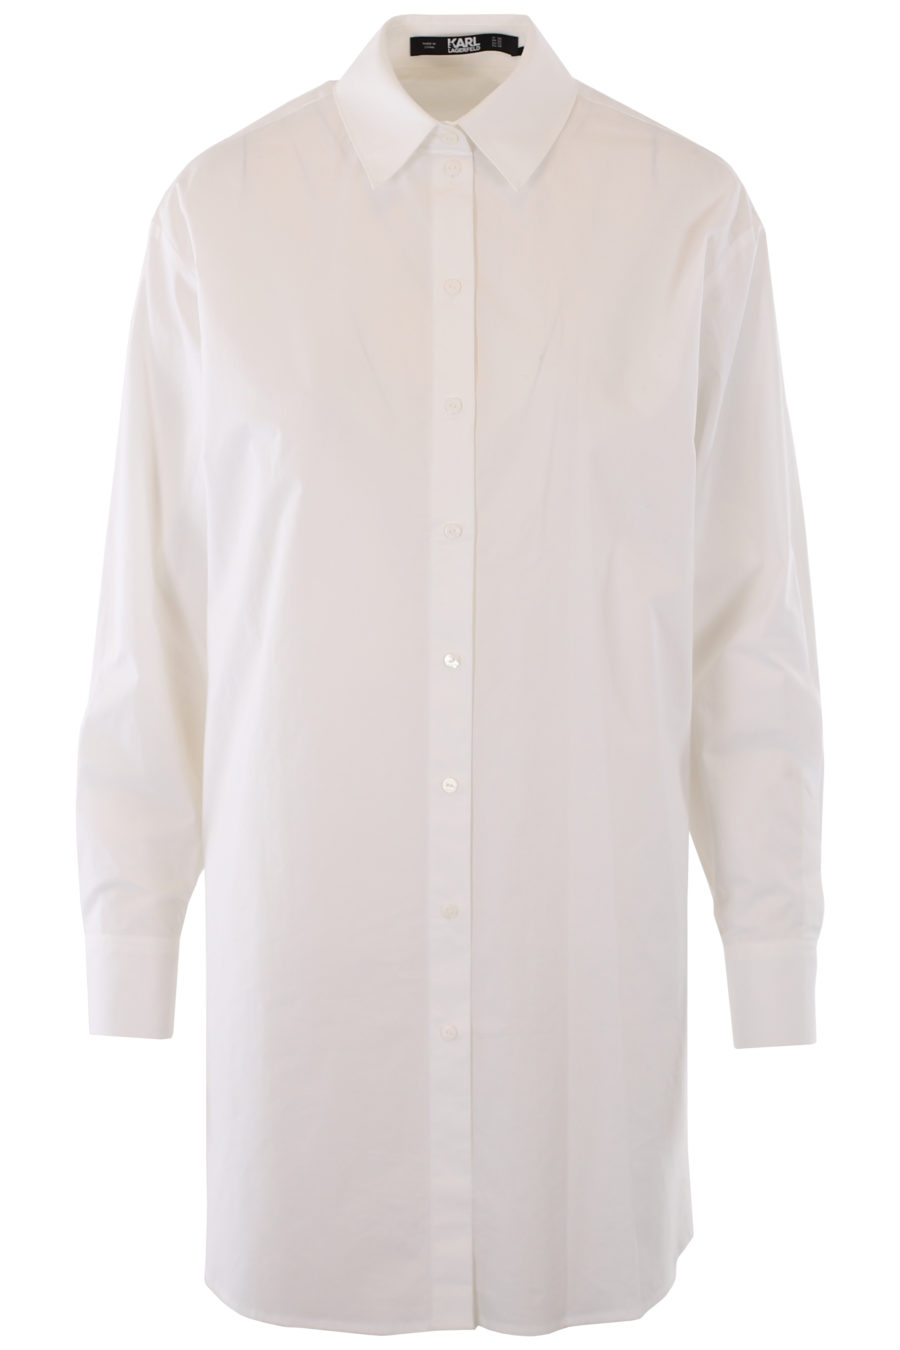 Longue chemise blanche avec logo et détails brodés - IMG 1242